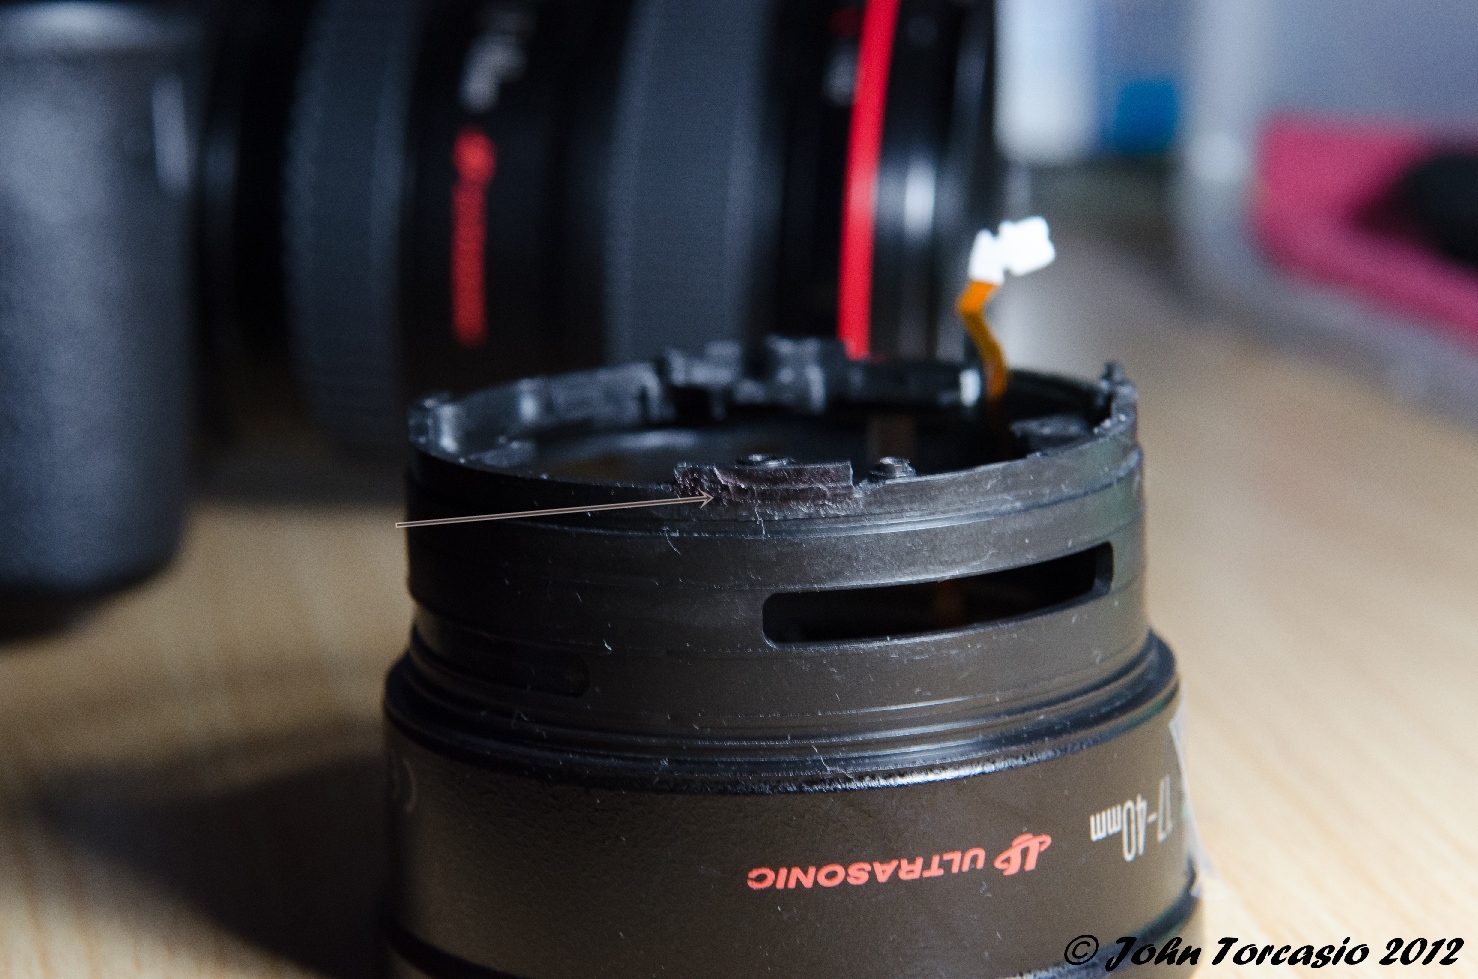 Canon Lens 17-40mm EF f4L USM